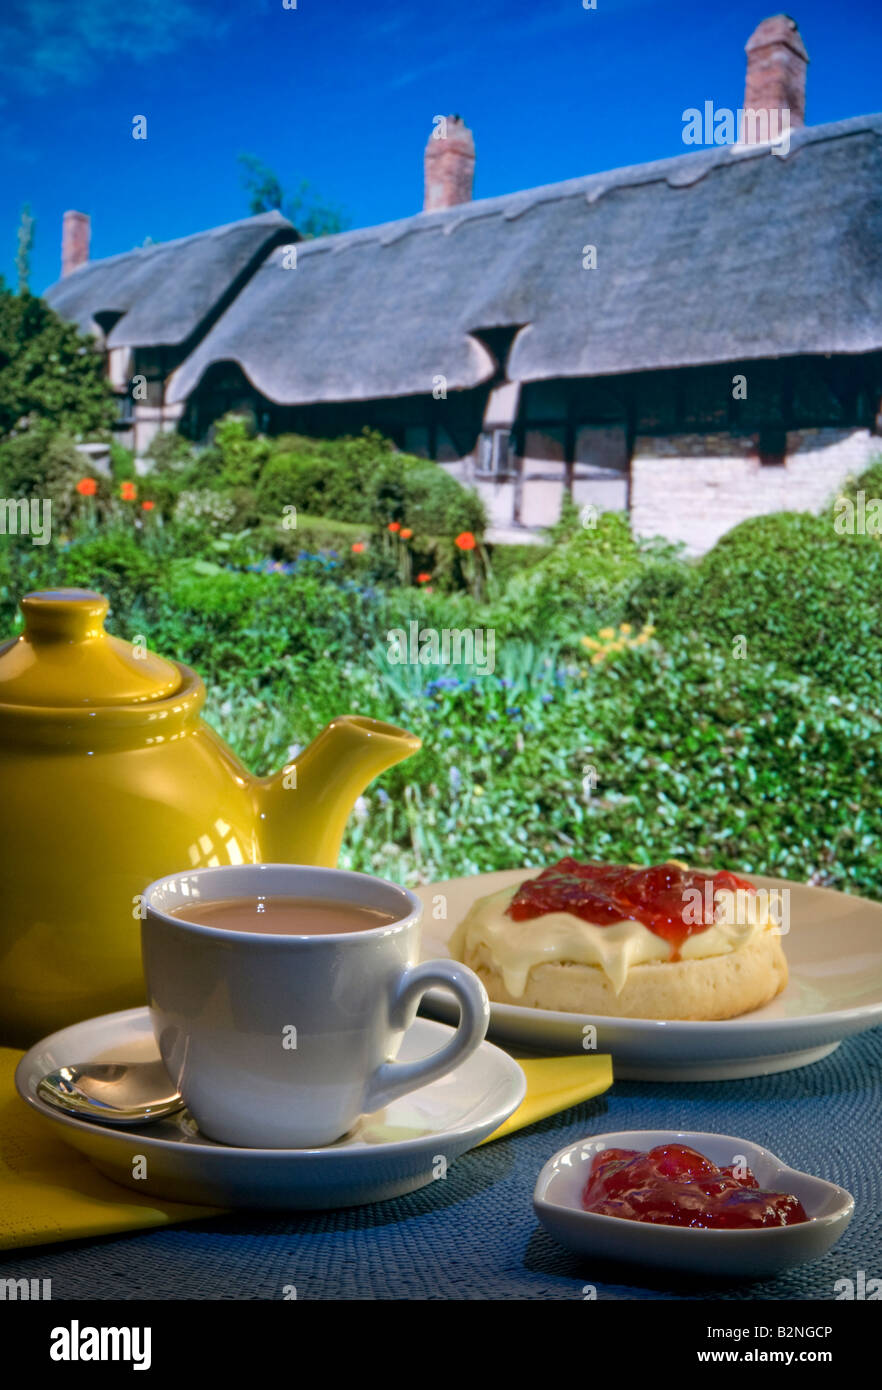 Crema de té crema de mermelada y scone con Anne Hathaways casa de campo de paja y jardín en el fondo. Stratford-upon-Avon Inglaterra Reino Unido Foto de stock